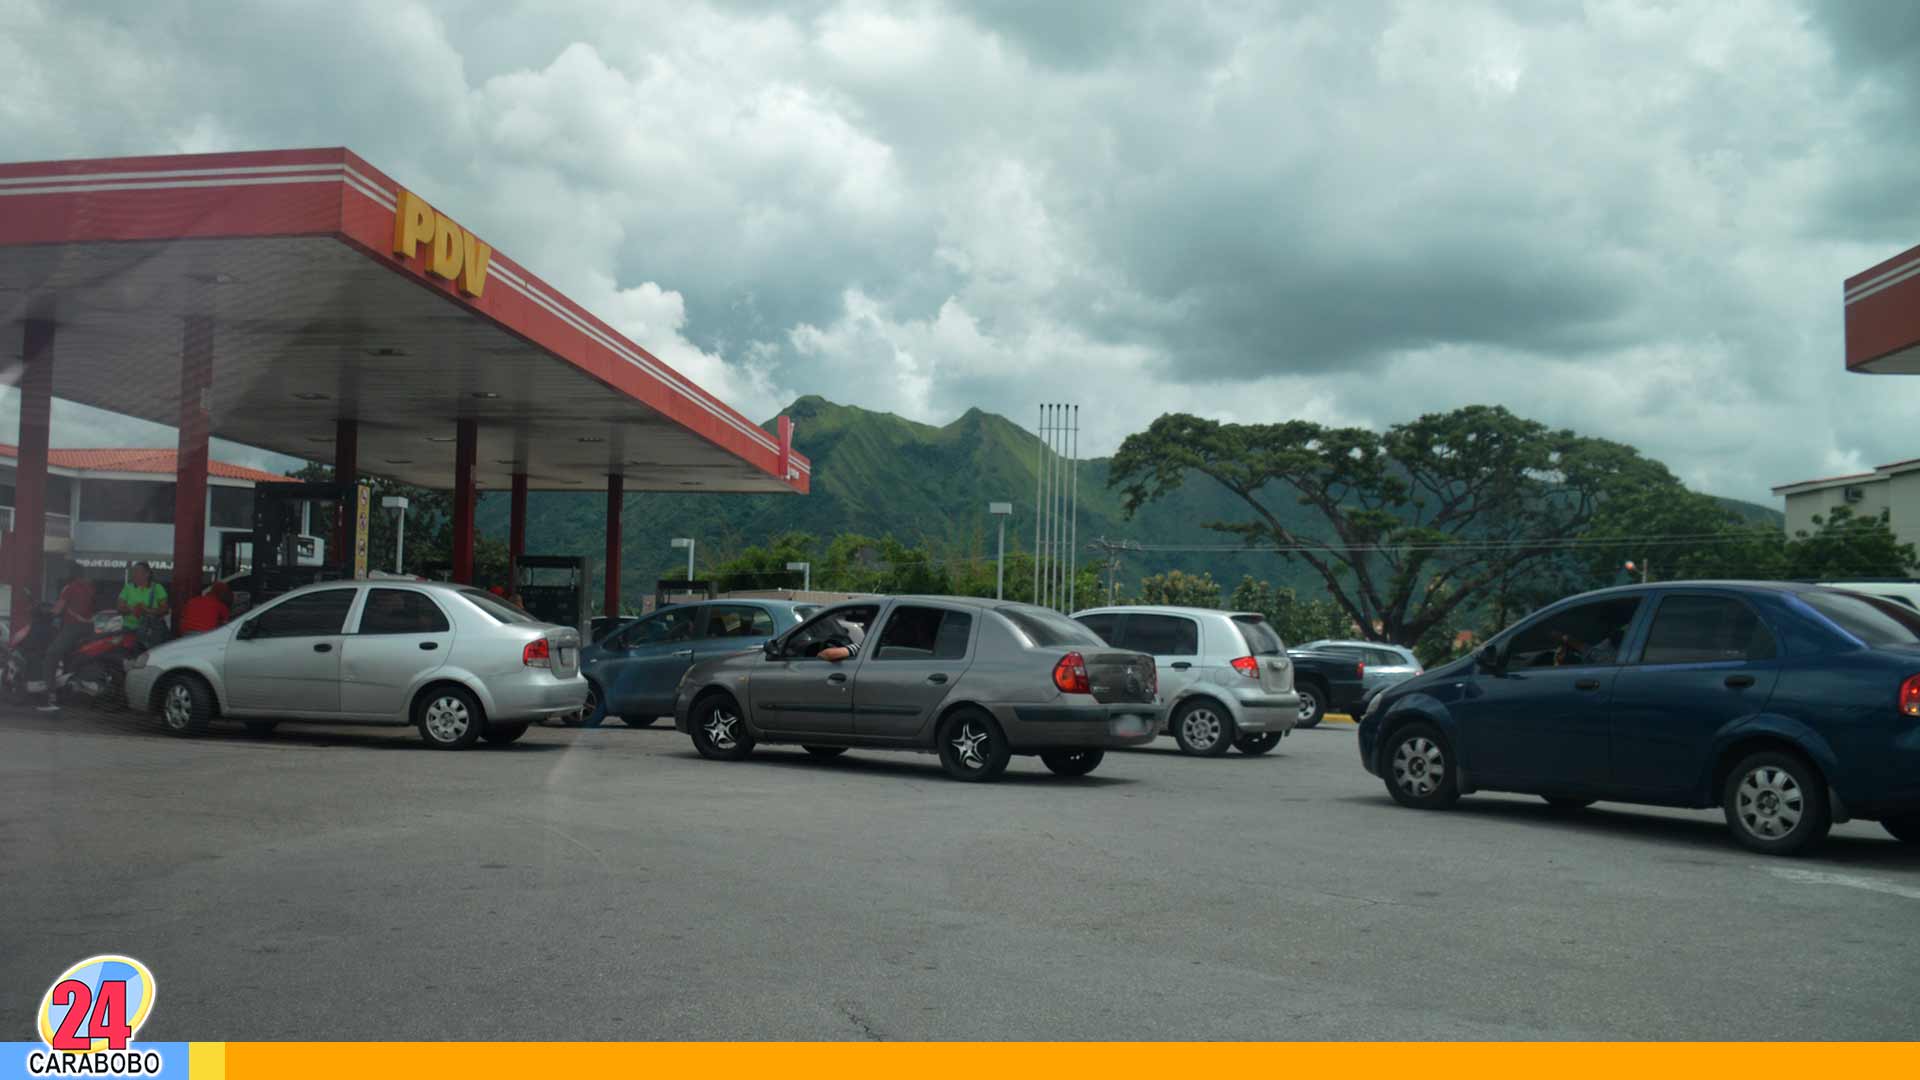 gasolineras en Carabobo - Gasolineras en Carabobo